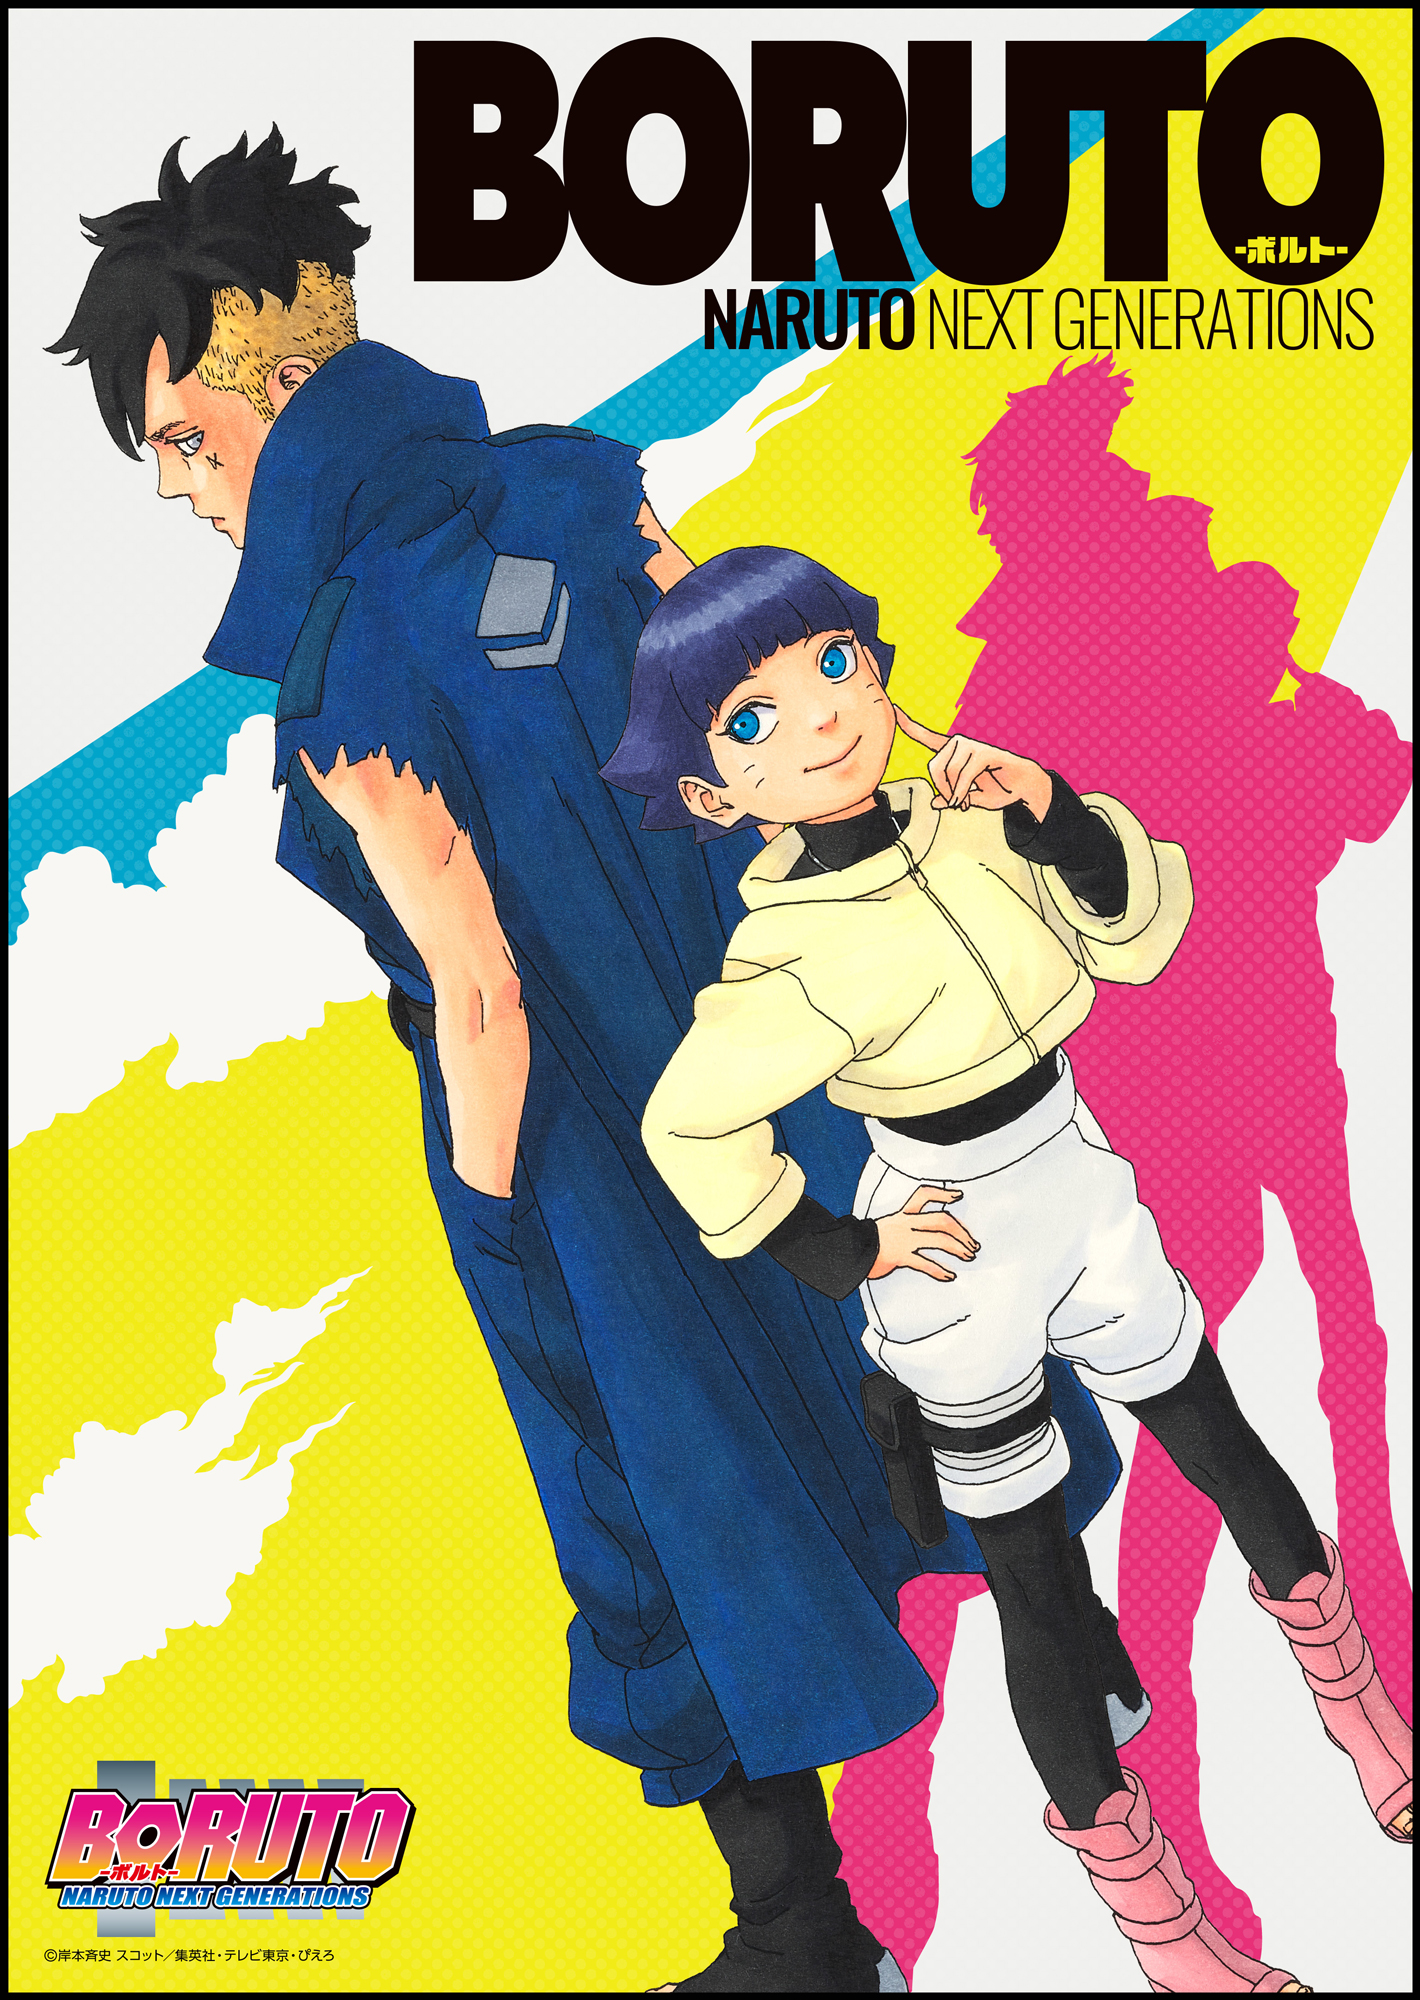 Boruto: Naruto Next Generations | Boruto Wiki | Fandom